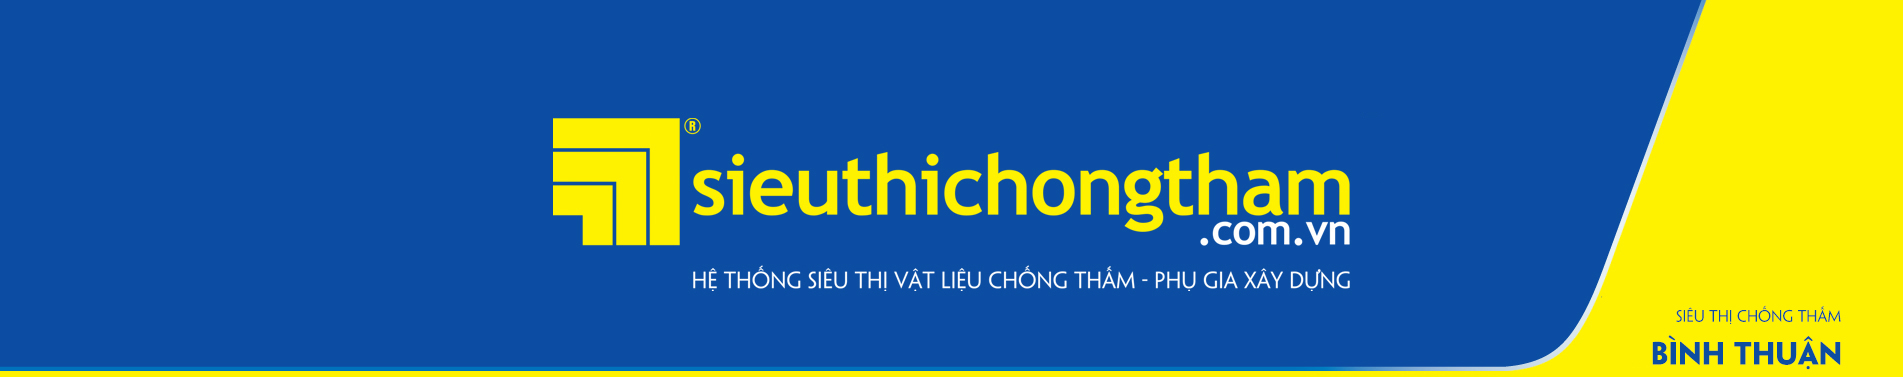 Sieu Thi Chong Tham Binh Thuan